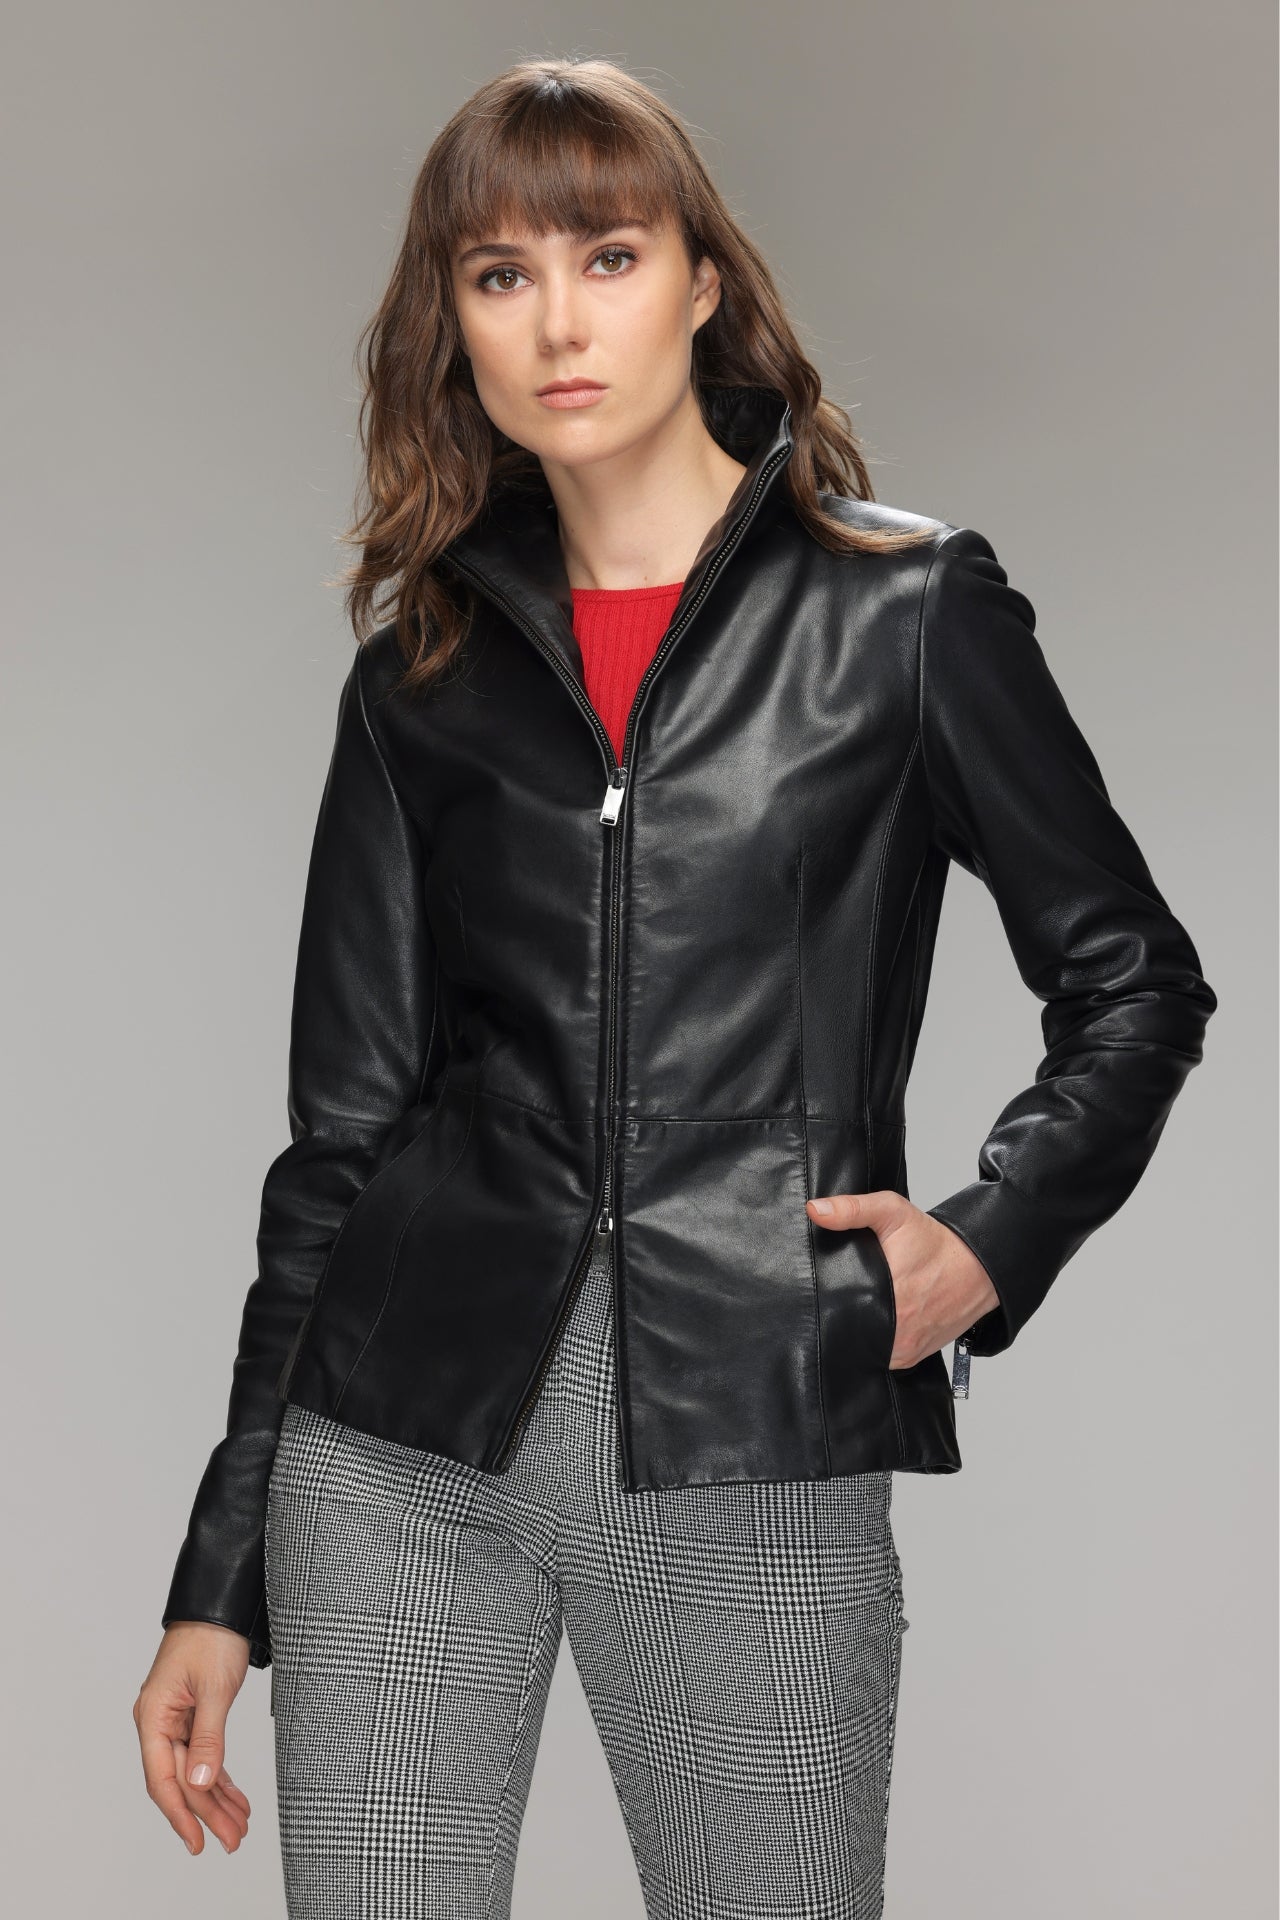 WYNE - Genuine Leather Jacket – Danier